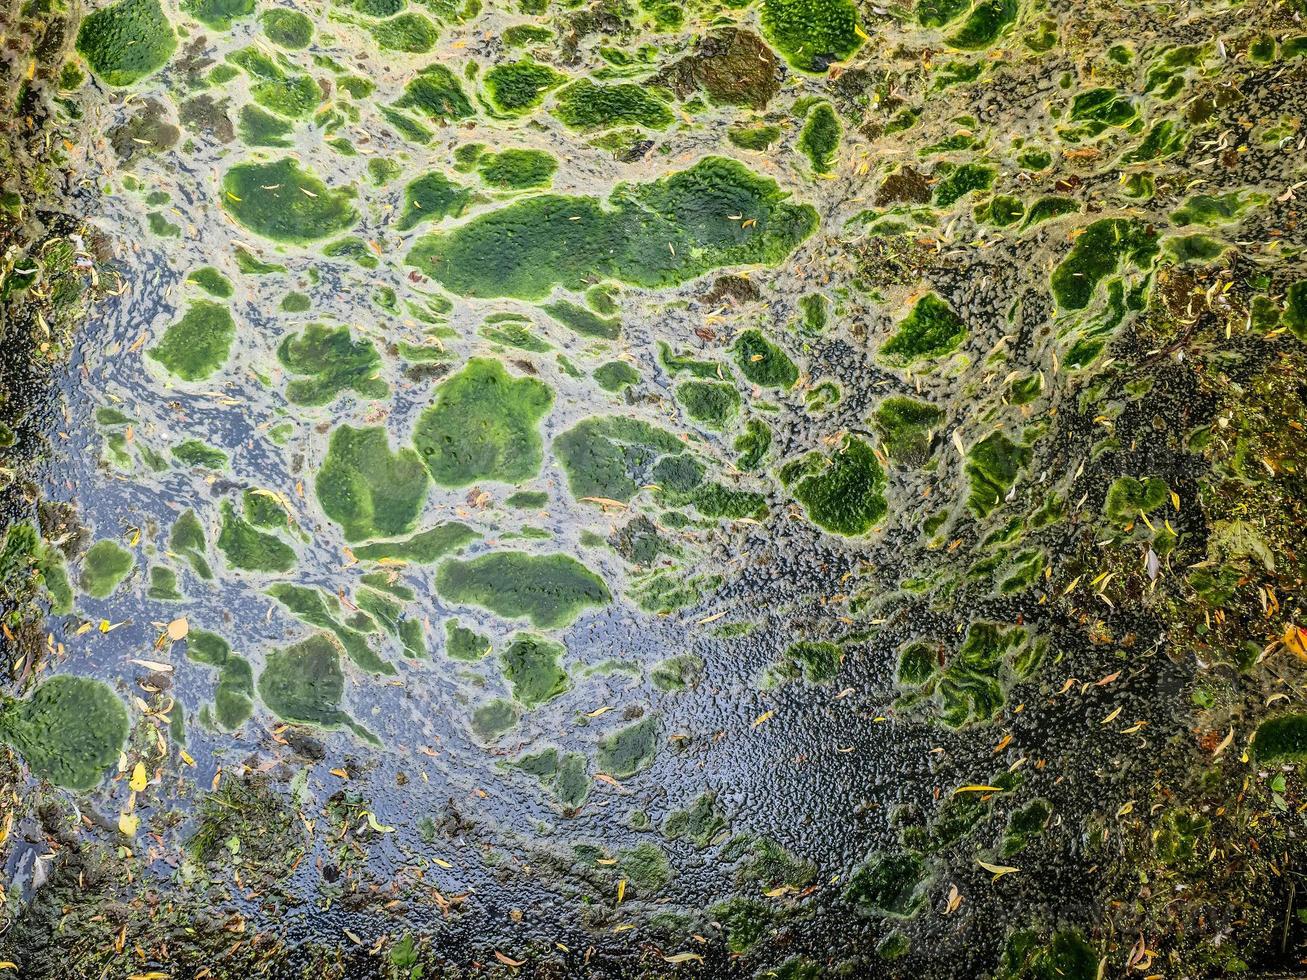 padrão de textura de fundo de algea formando camada espessa na superfície da água foto